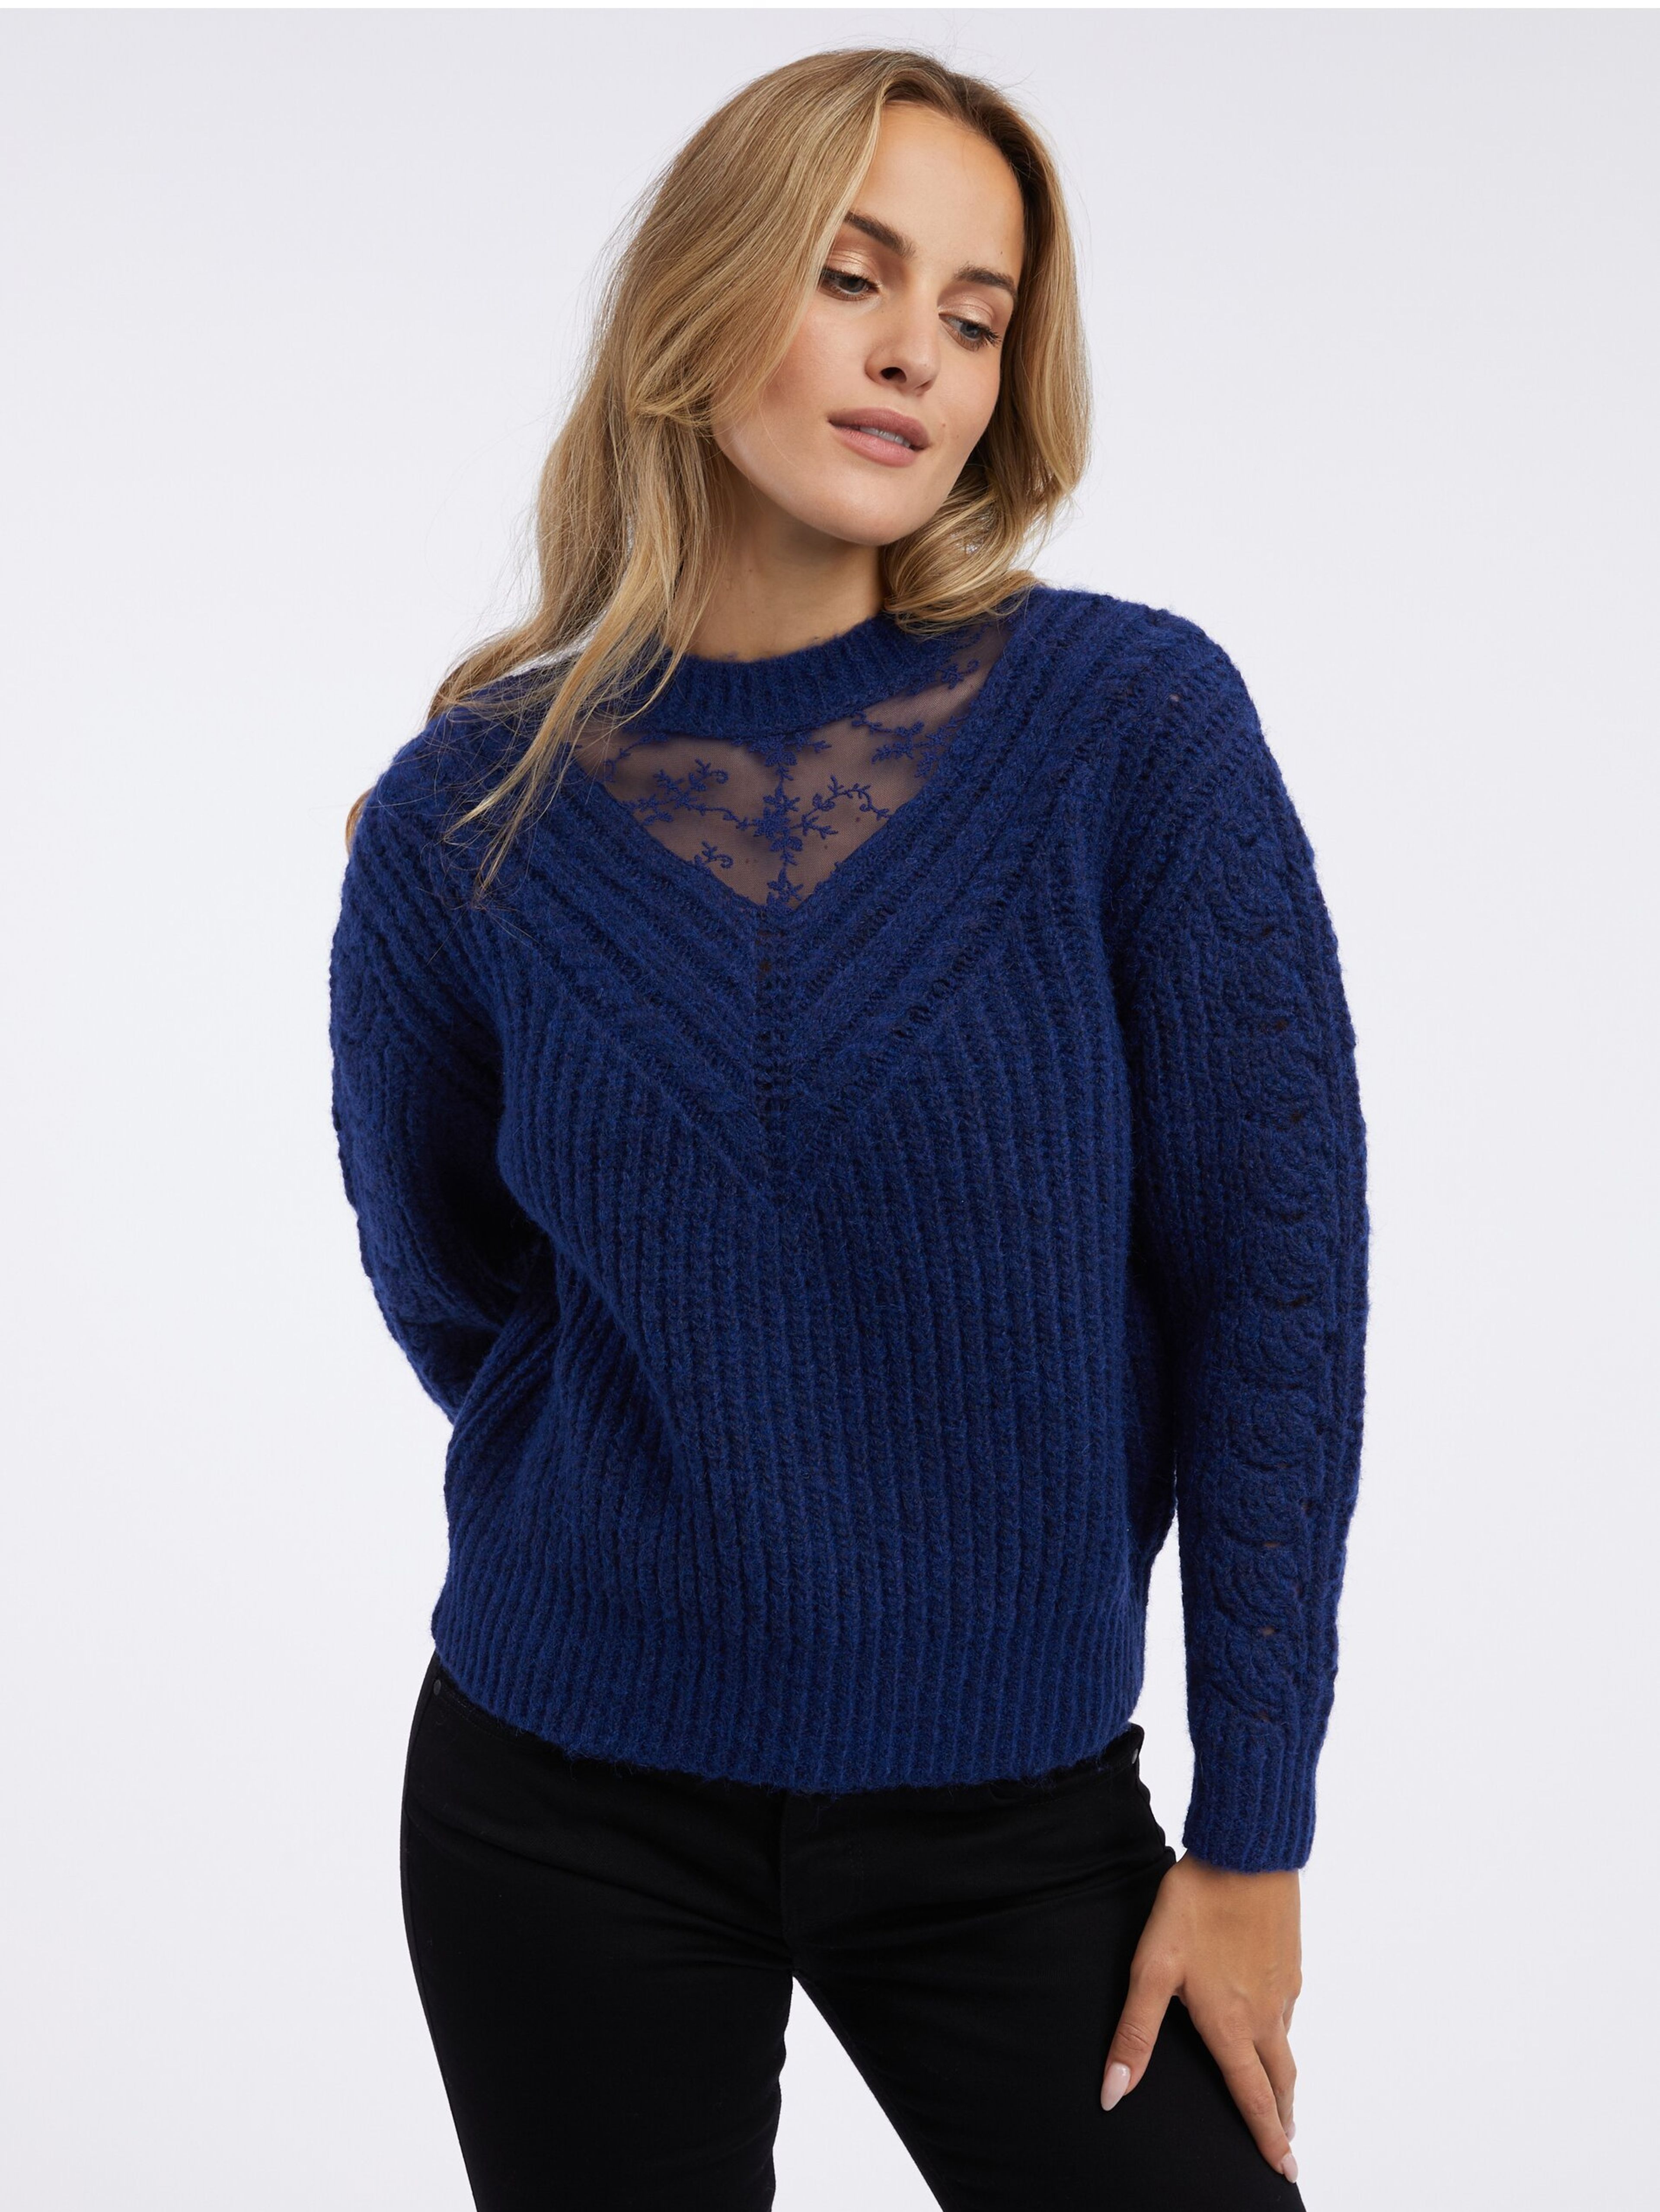 Granatowy sweter damski z koronką ORSAY